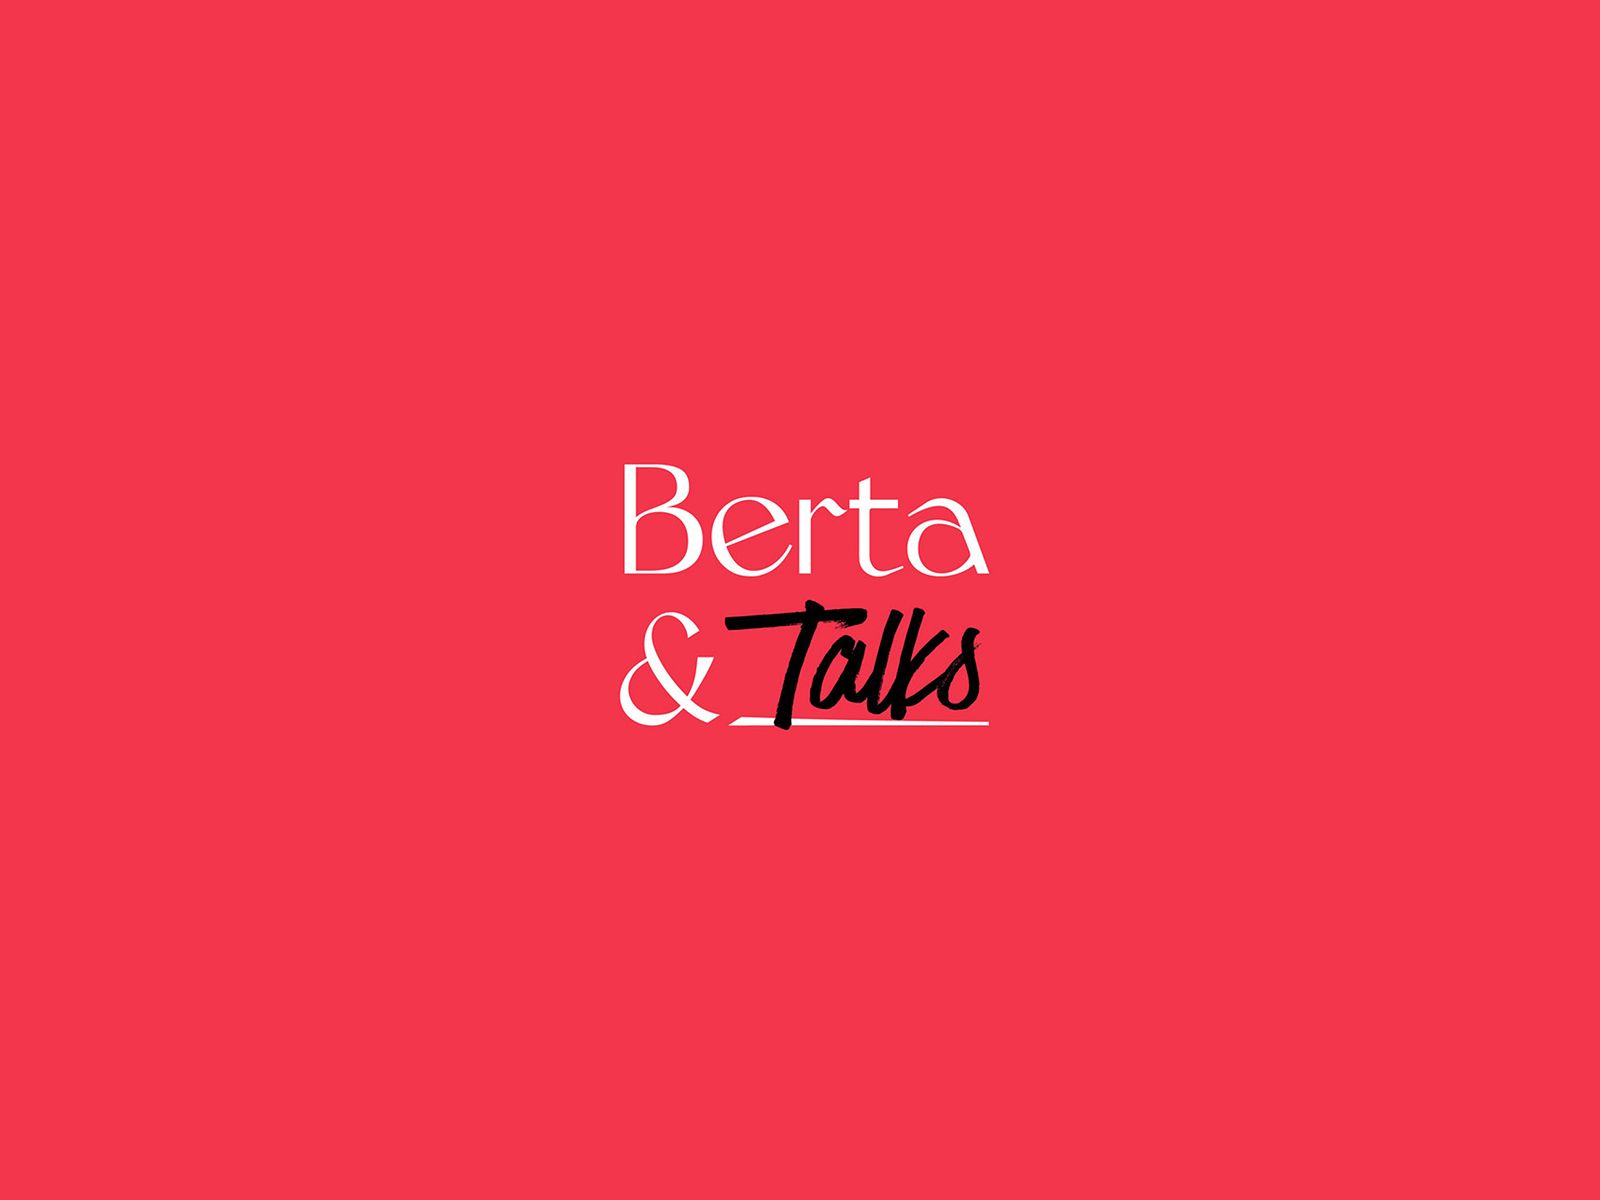 Berta And Agency startuoja tinklalaide bertatalks laukia isskirtiniai pokalbiai apie tradicine komunikacija ir netradicini poziuri i ja